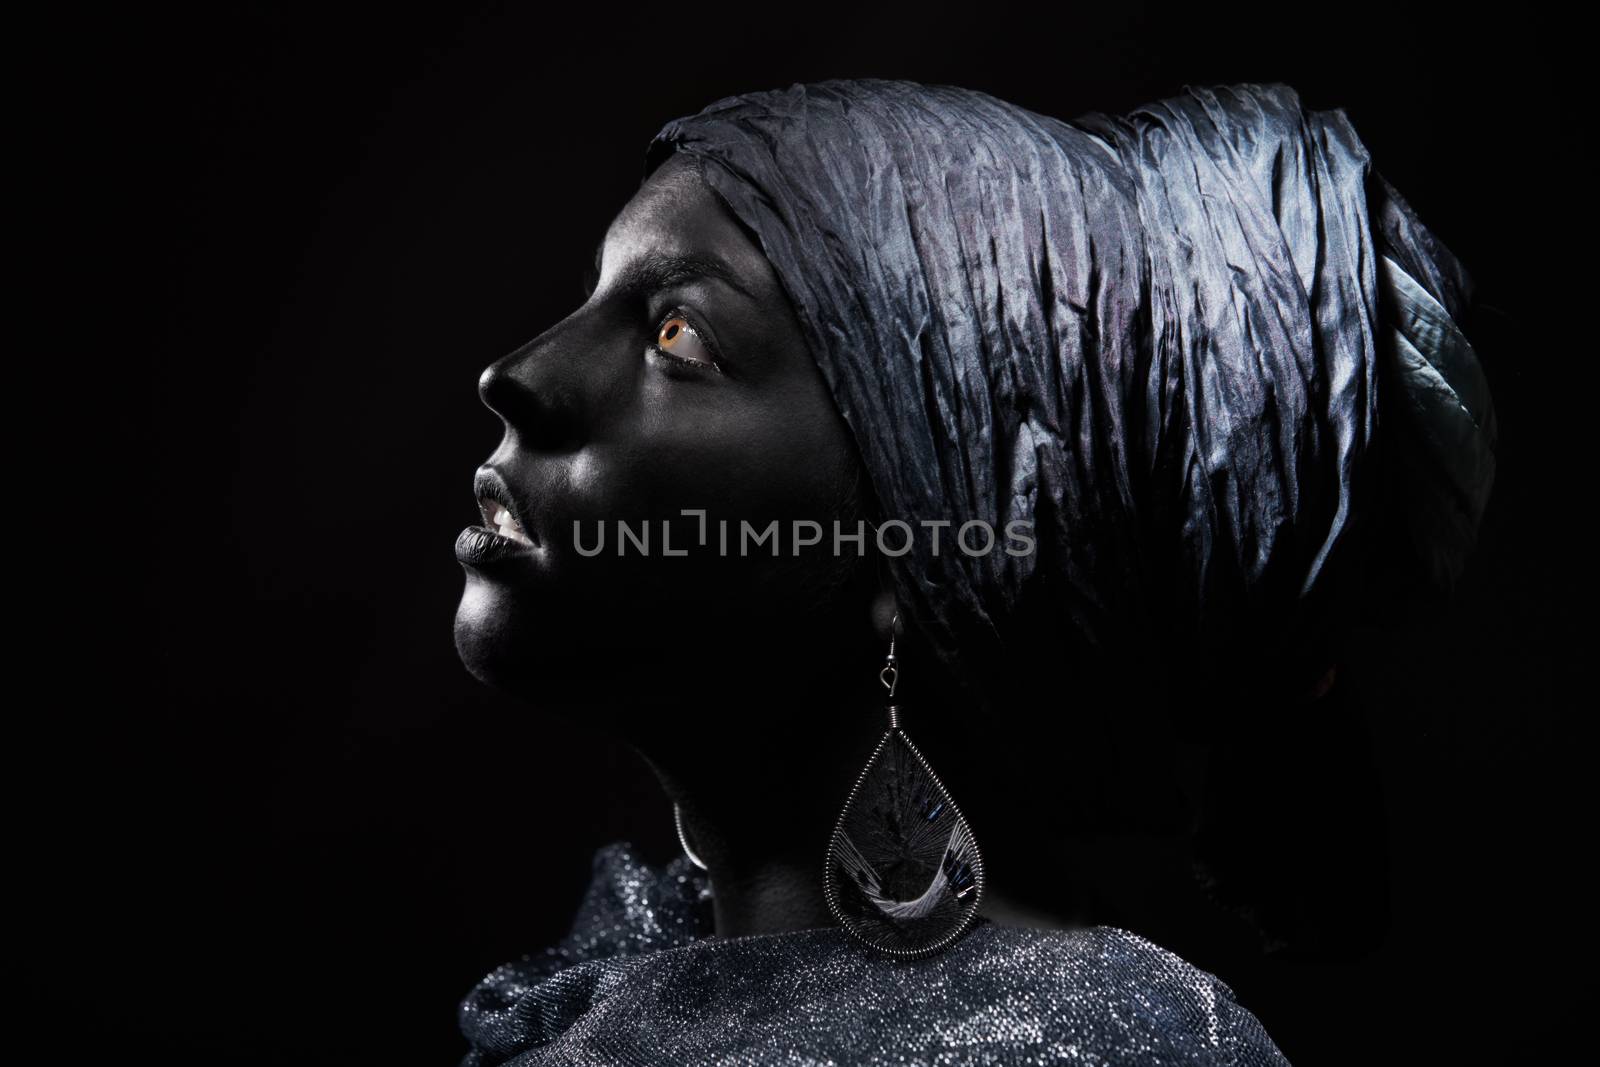 Black beauty by Novic